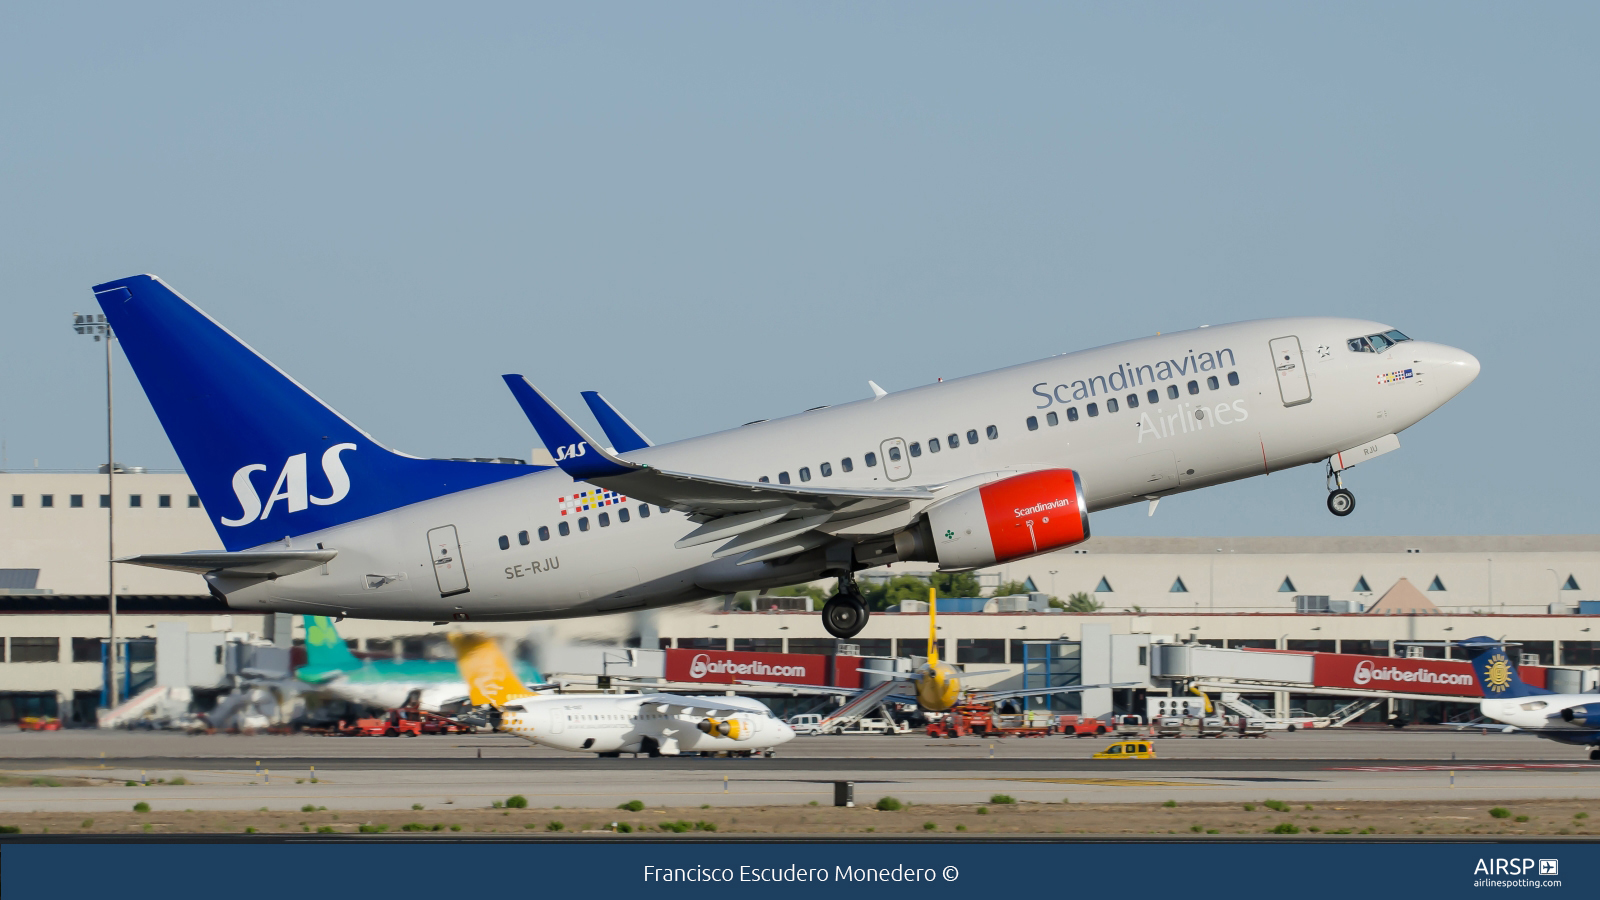 SAS Scandinavian Airlines  Boeing 737-700  SE-RJU